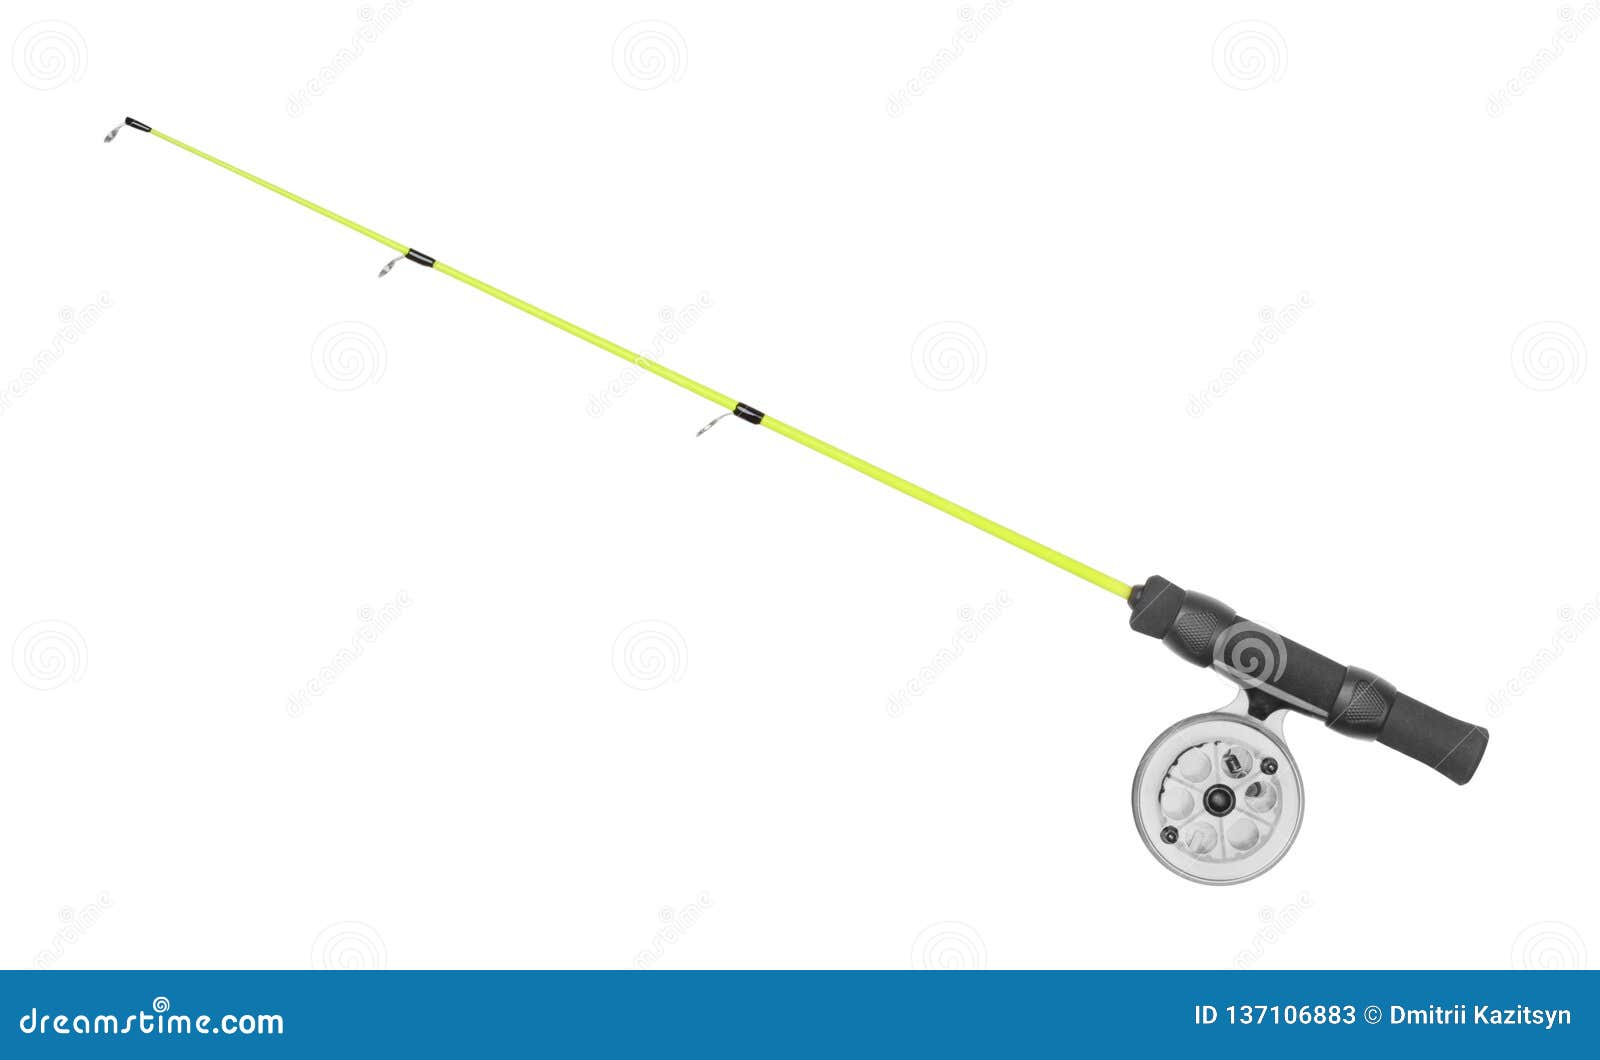 Fishing Rod Isolated on White Stock Image - Image of imitation, design:  137106883